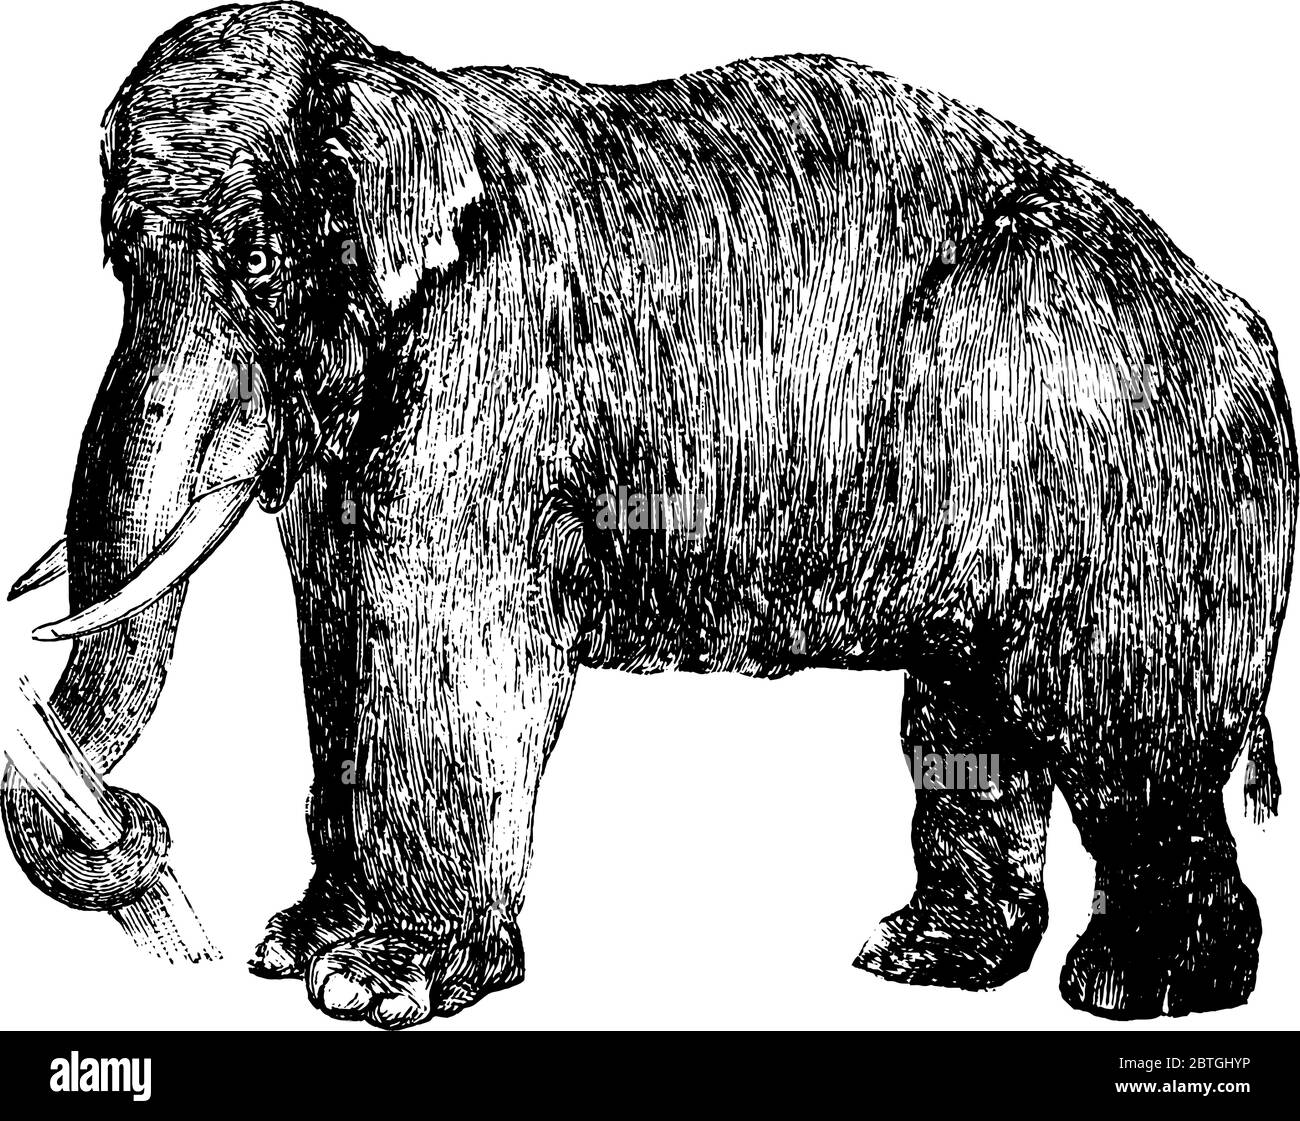 Elefant, das große Säugetier mit langem Rüssel, der ein Baumstamm fasst, Stoßzähne, die als Waffen verwendet werden, große Ohren und Pfeiler wie Beine, Vintage-Linie Zeichnung oder Engravi Stock Vektor